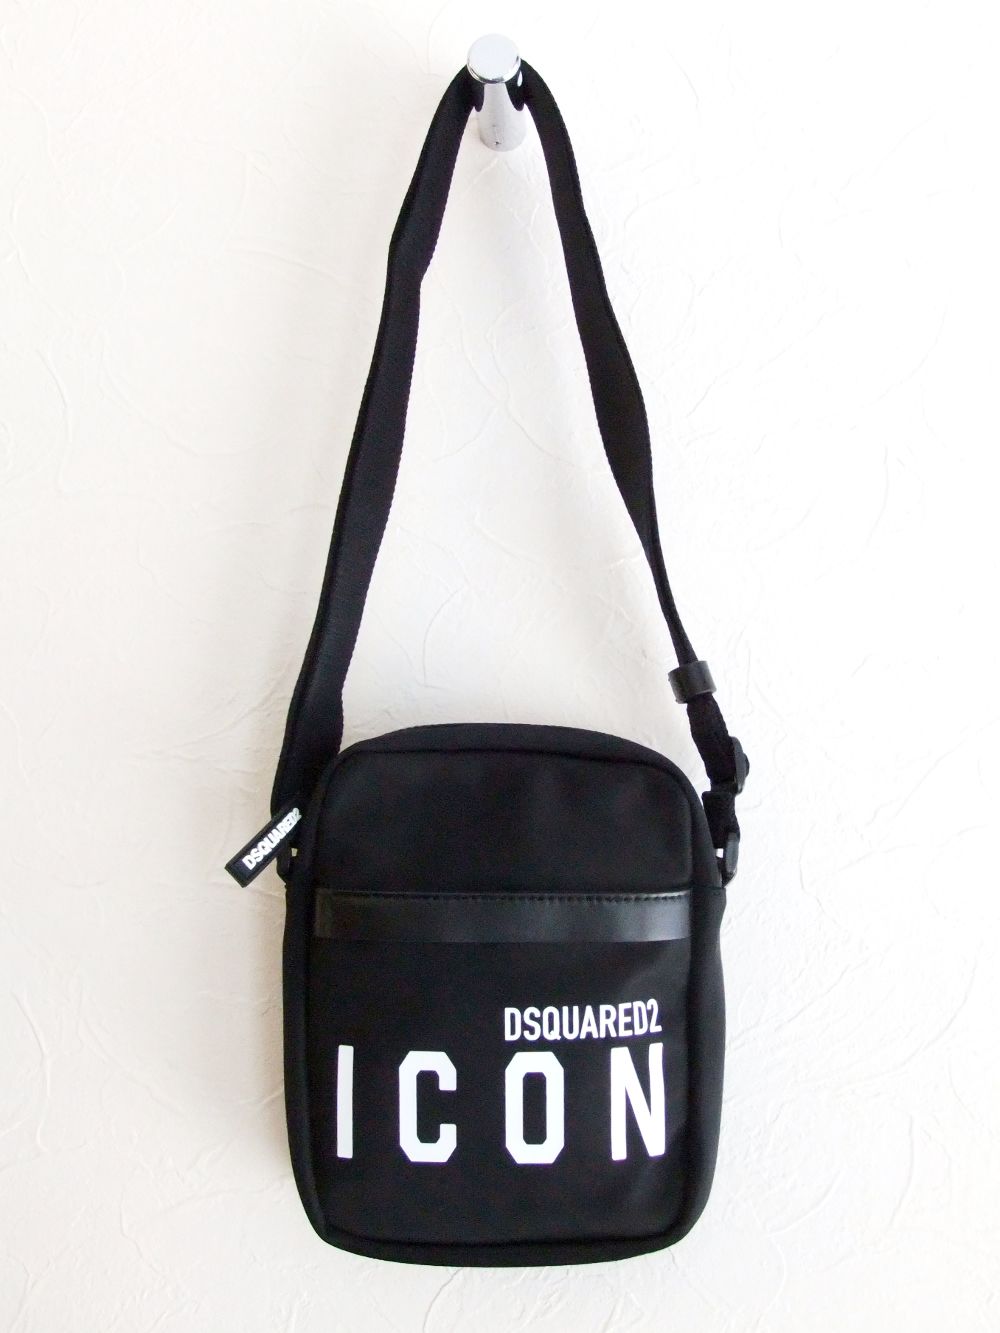 【購入価格】Dsquared2 ICON ショルダーバッグ バッグ